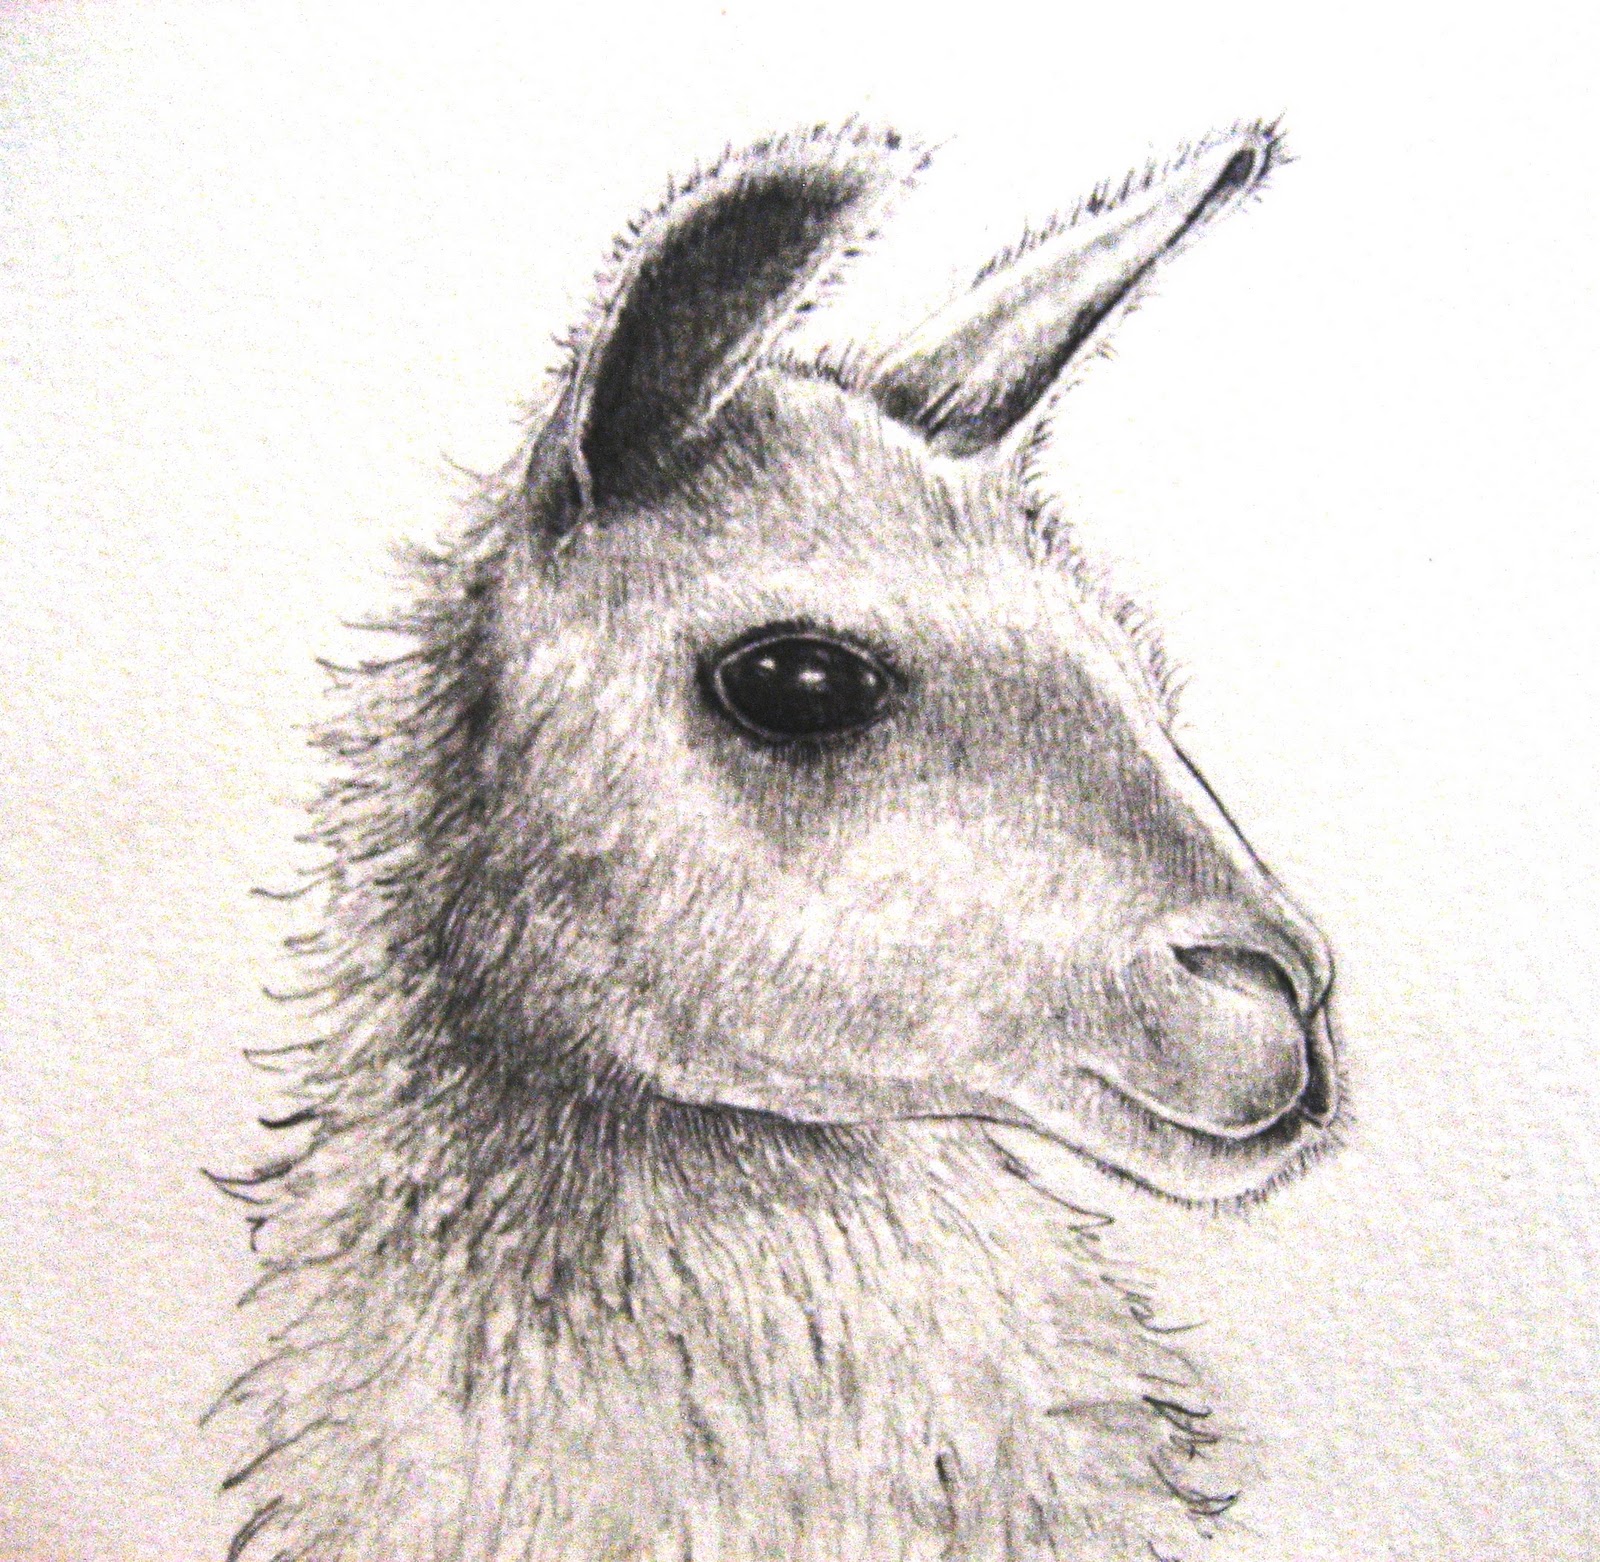 Llama Face Drawing at Explore collection of Llama